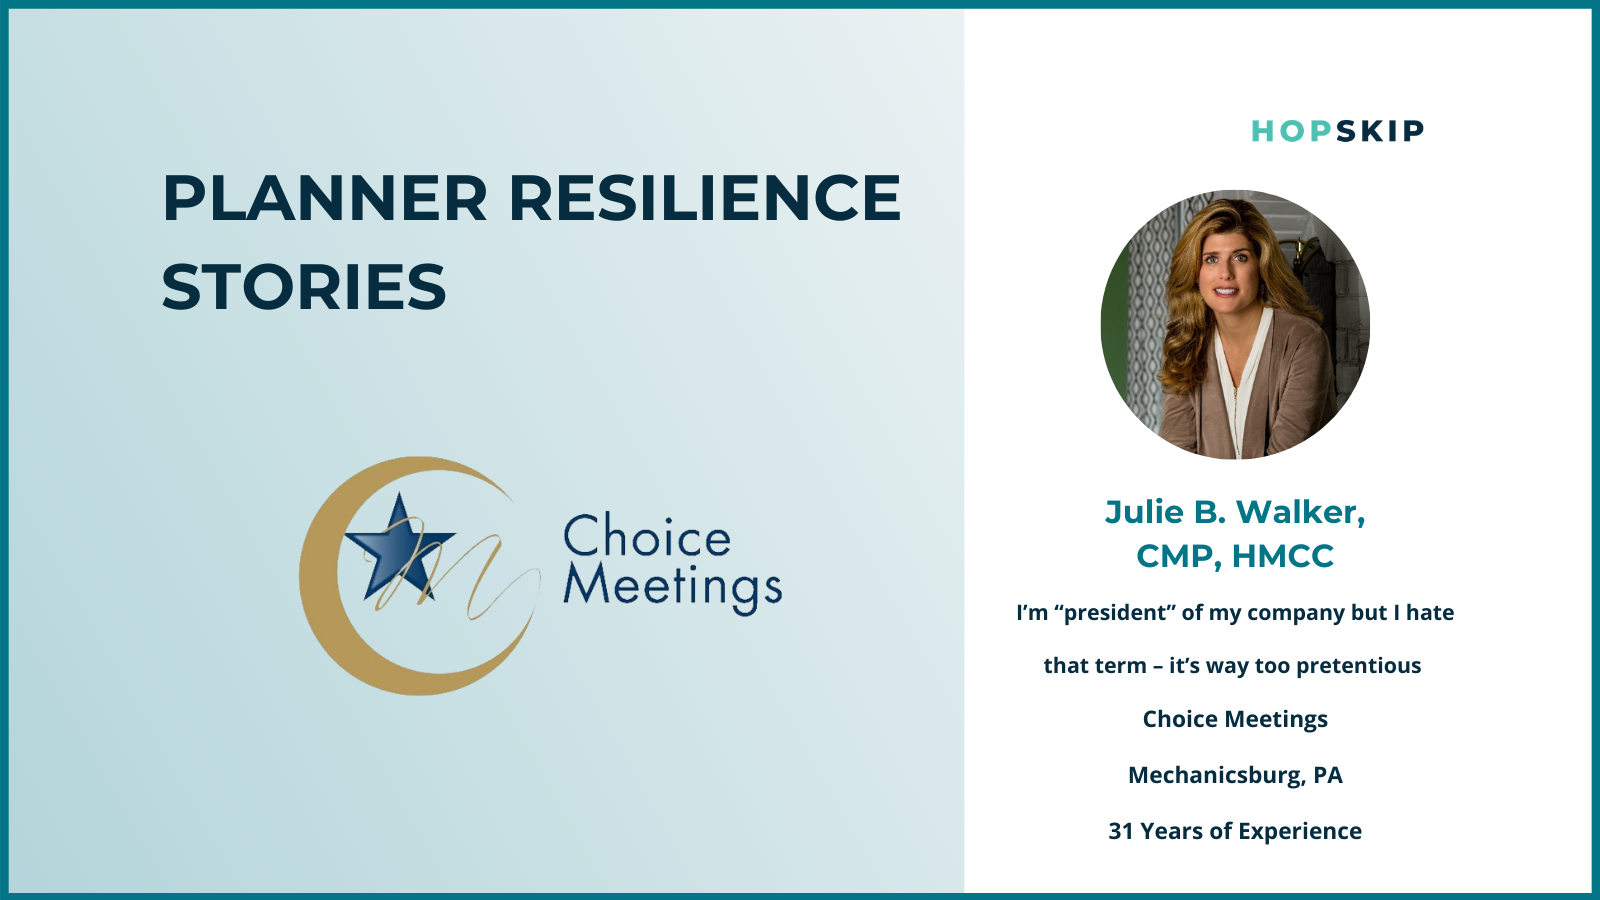 Julie Walker, CMP, owner of Choice Meetings